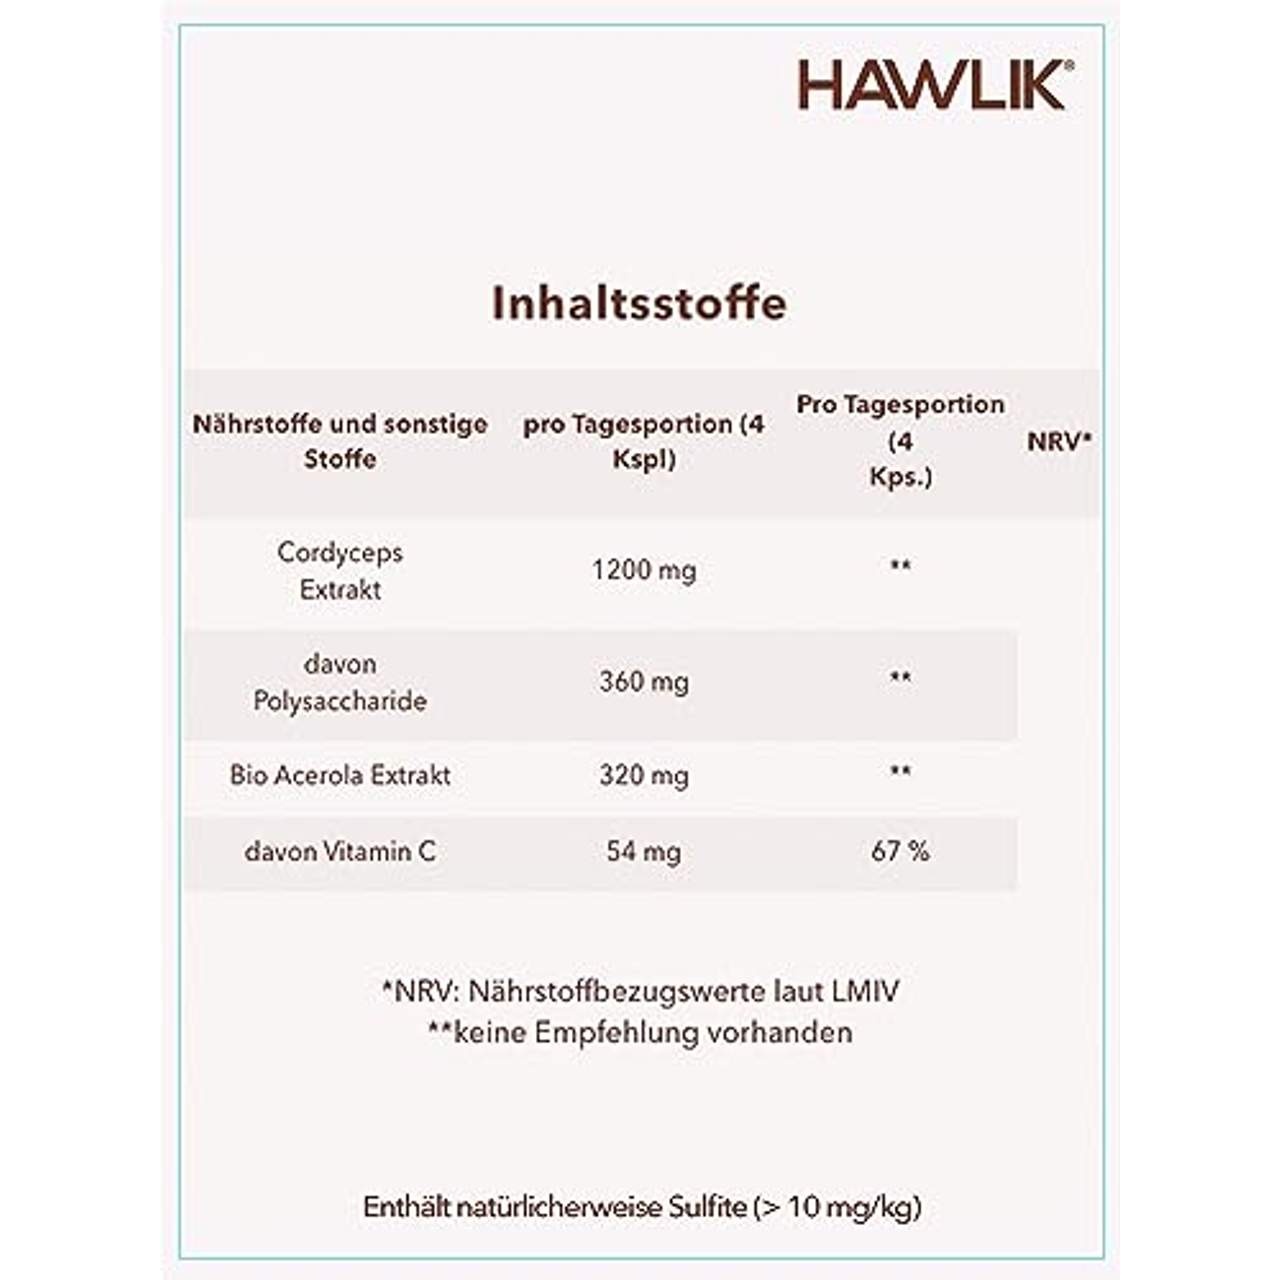 Hawlik Vitalpilze Cordyceps CS-4 Pilz Extrakt Kapseln